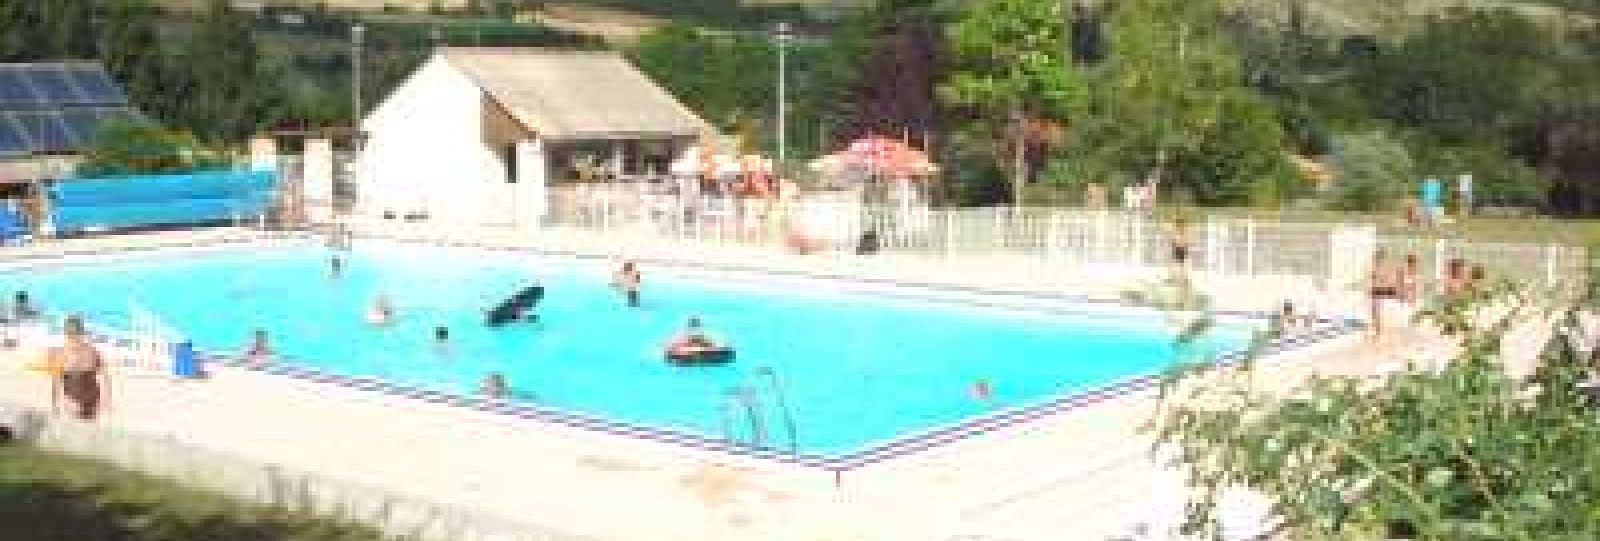 Municipal swimming pool